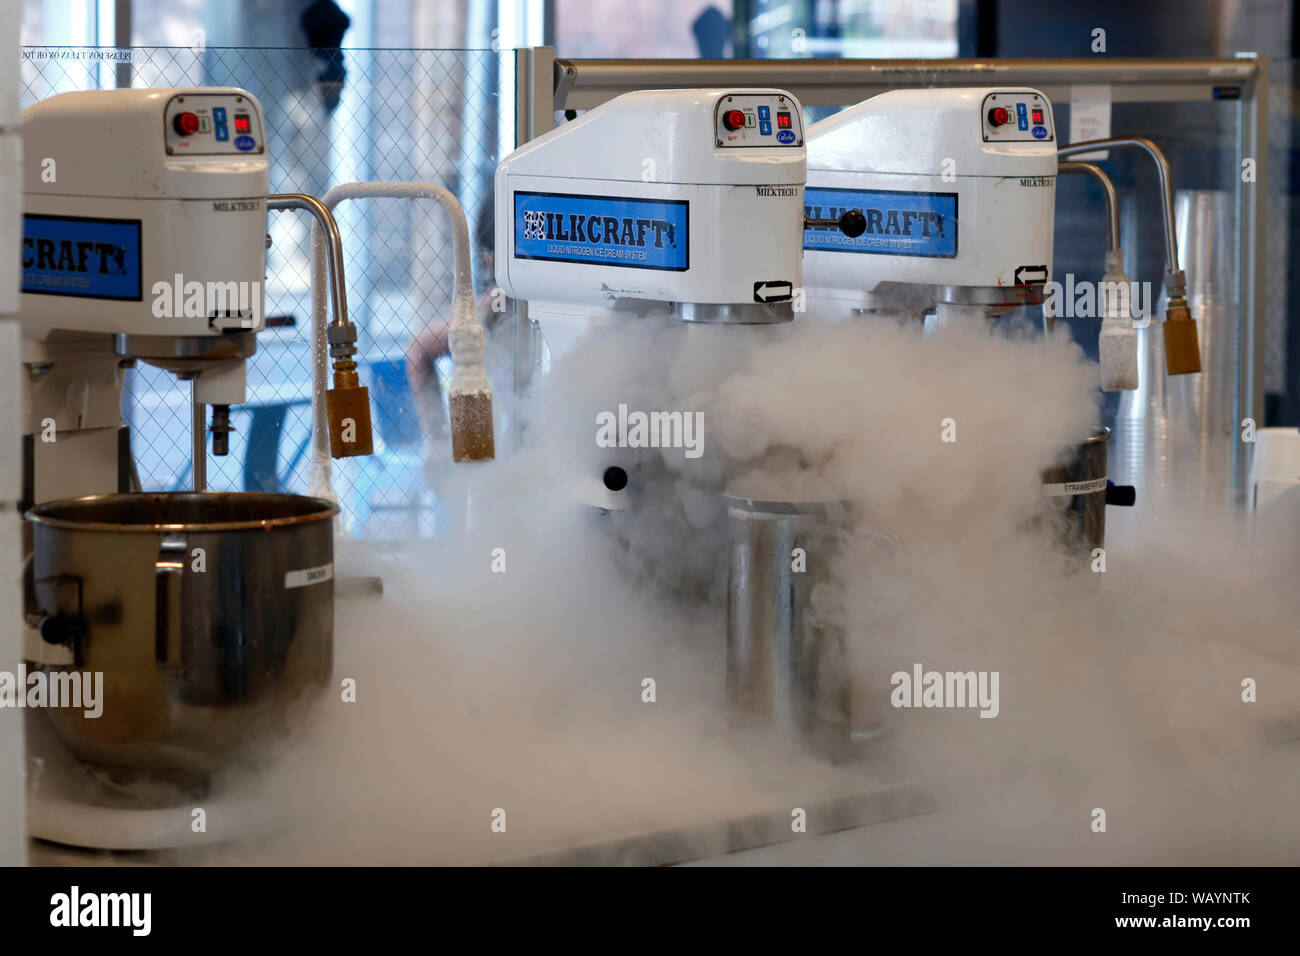 Stickstoff Eis am Milkcraft New Haven, 280 Crown Street, New Haven, CT gemacht werden Stockfoto